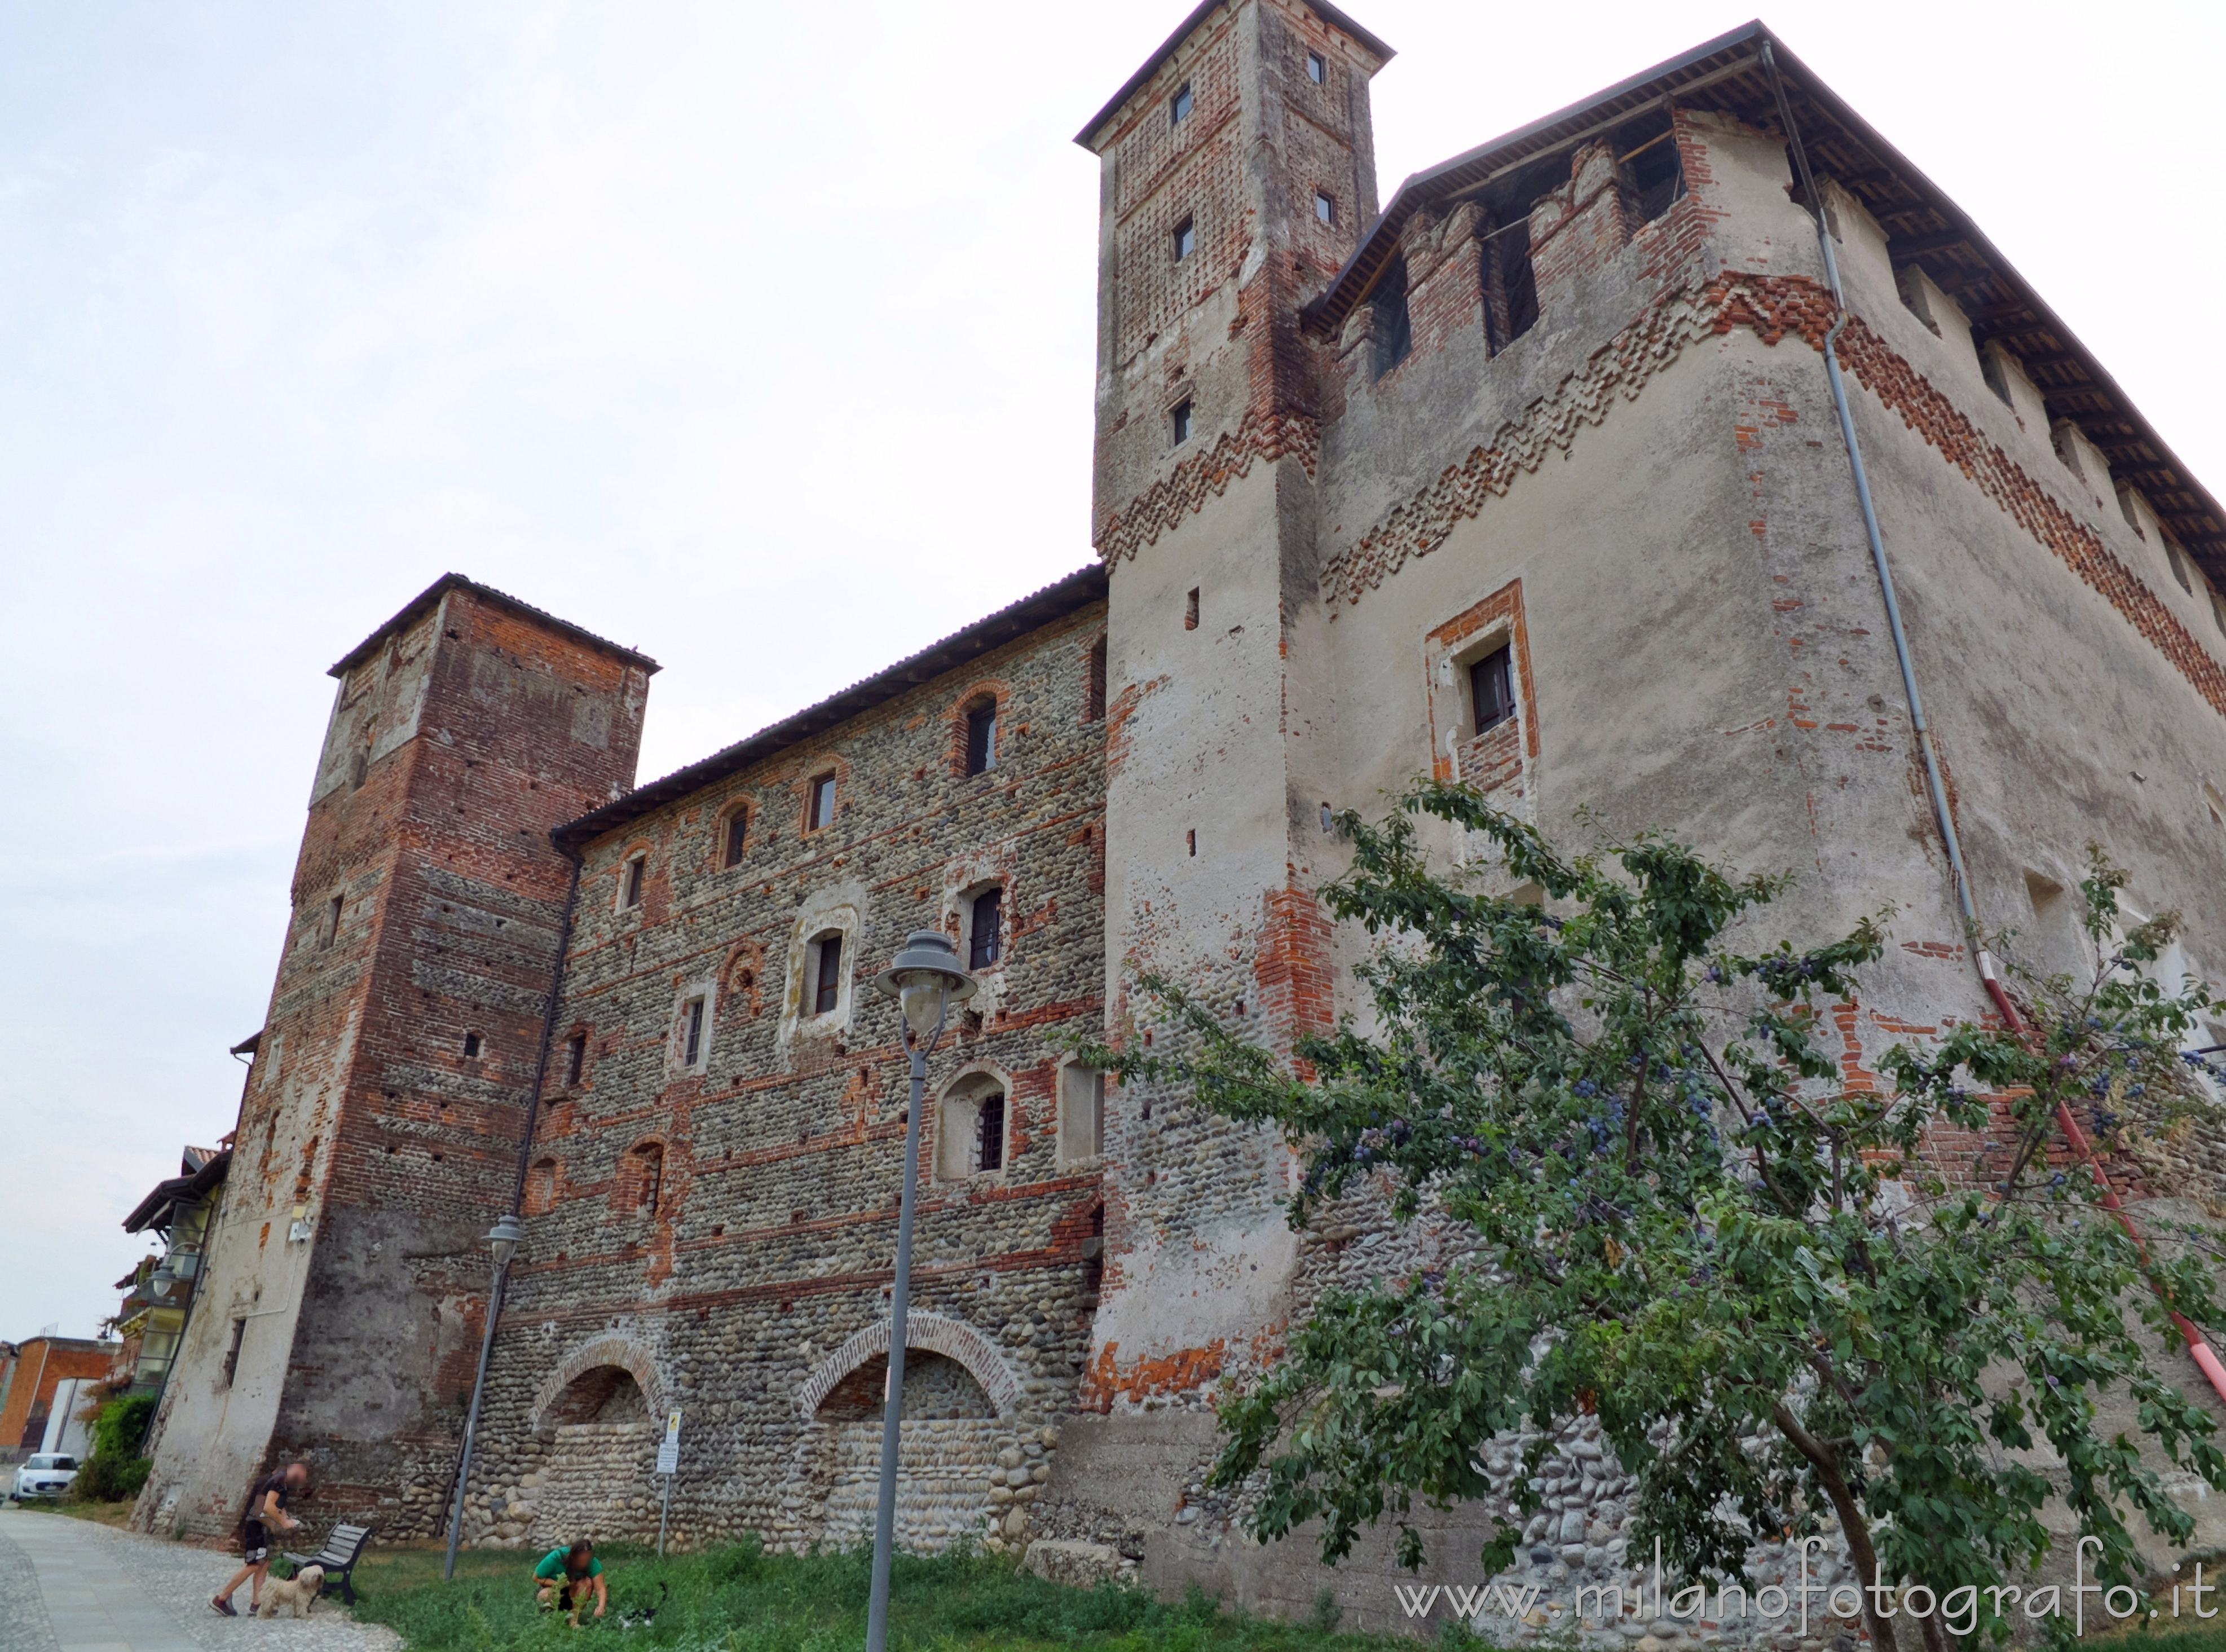 Lenta (Vercelli): Lato est del Castello Monastero benedettino di San Pietro - Lenta (Vercelli)